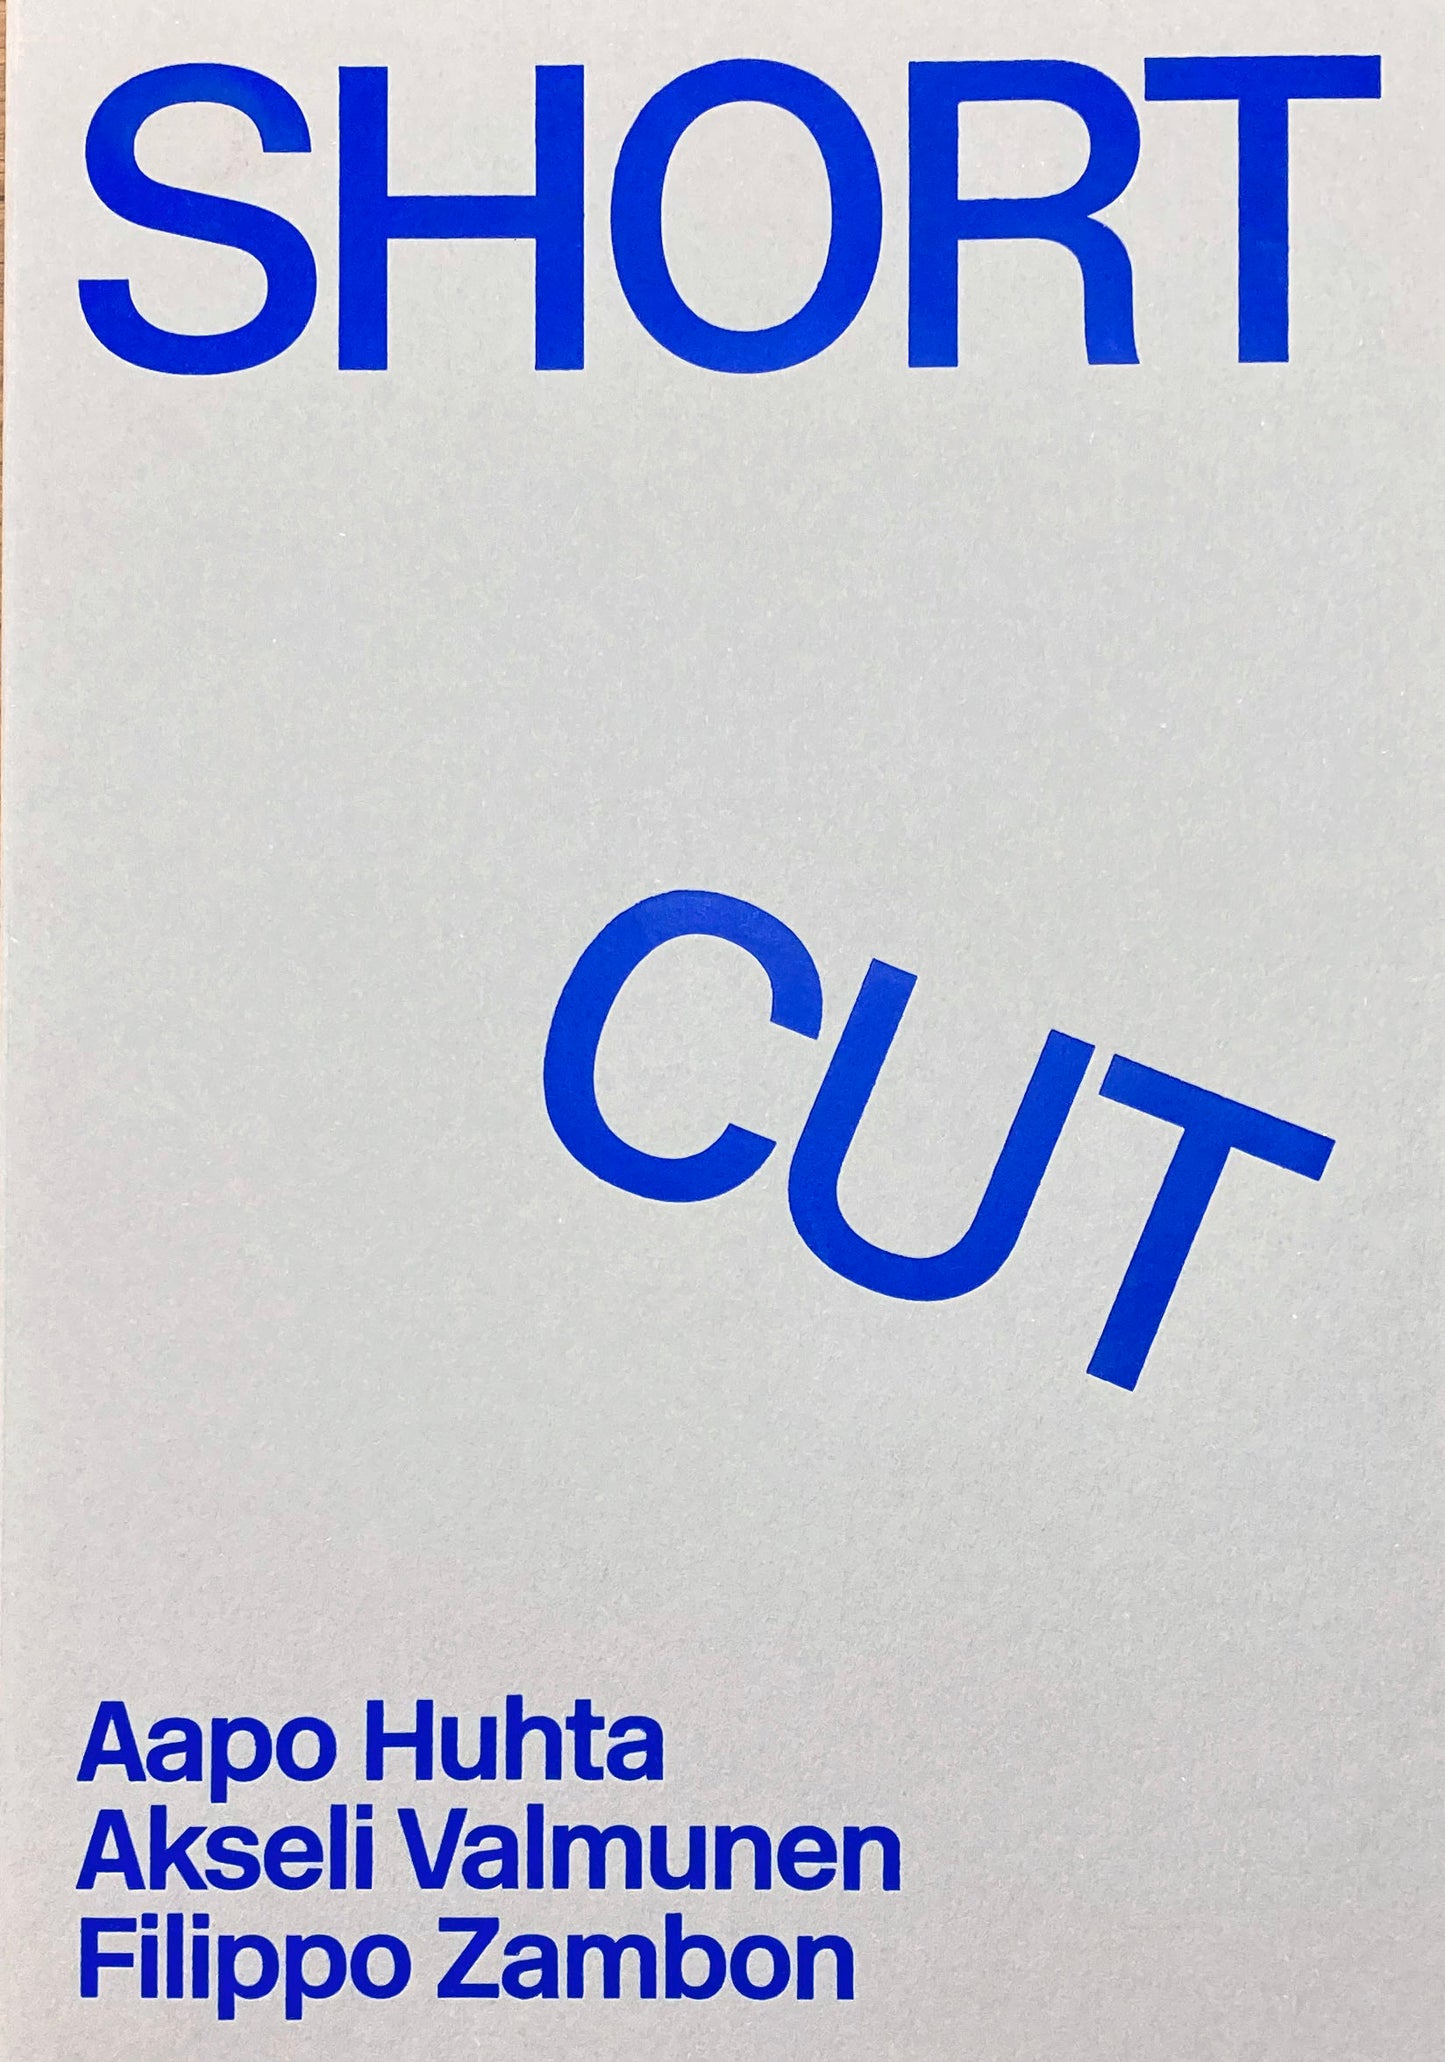 Aapo Huhta, Akseli Valmunen, Filippo Zambon / Short Cut